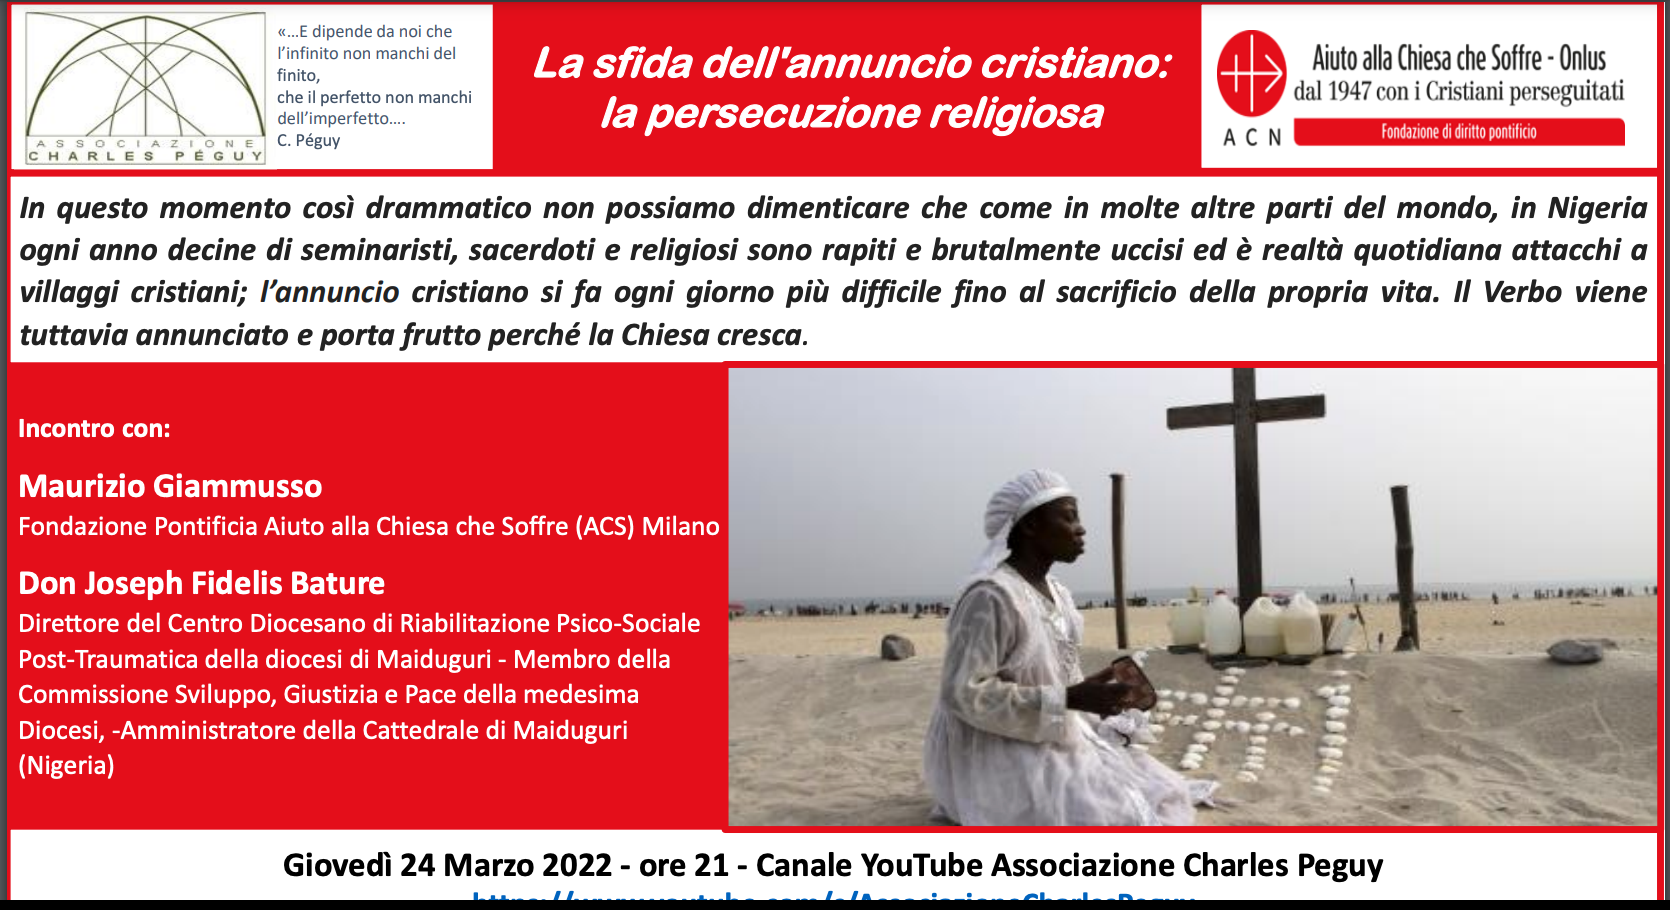 Featured image for “Milano: La sfida dell’annuncio cristiano”